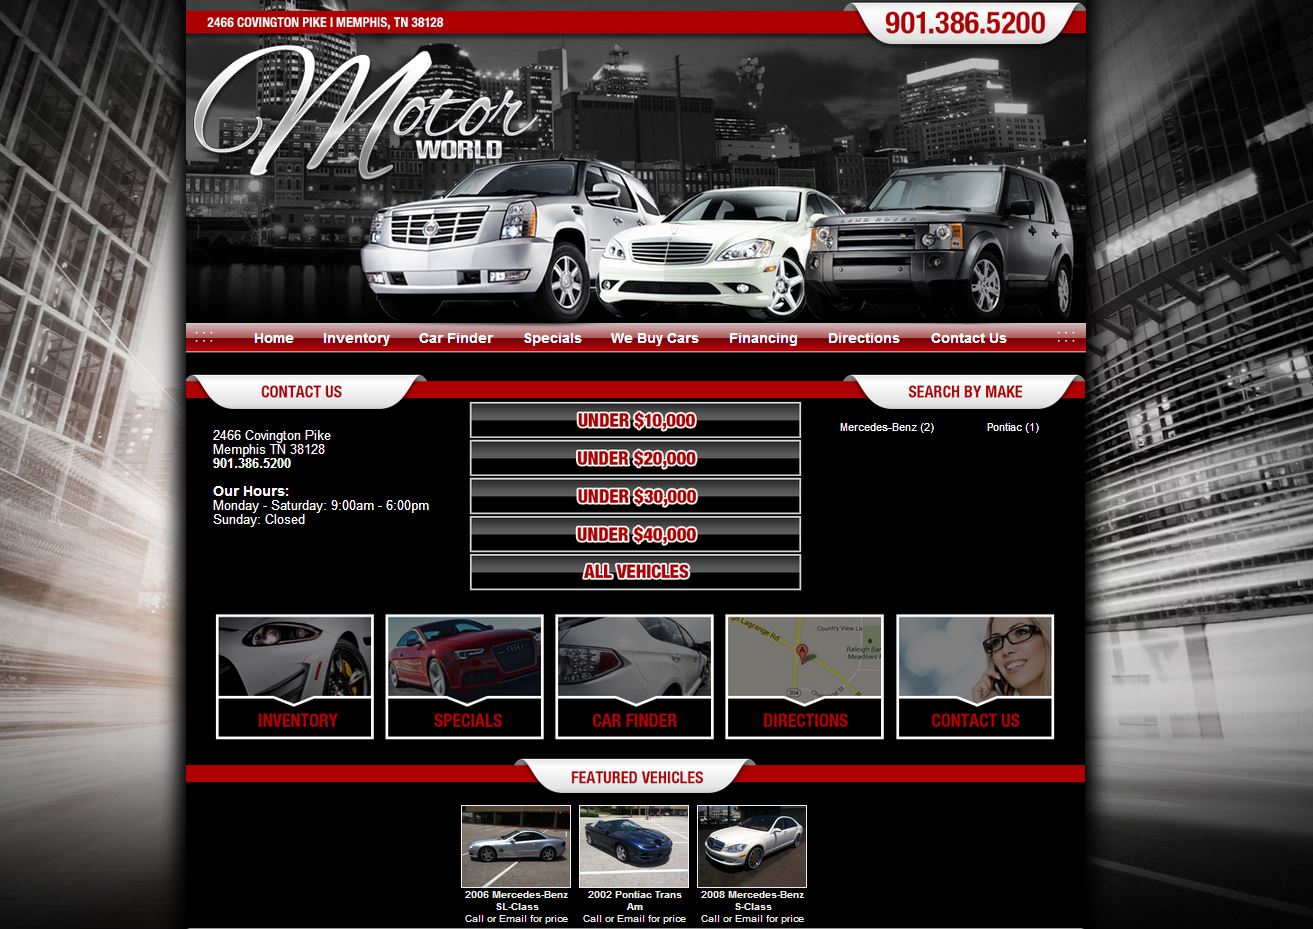 Launches Online Automotive Web Site